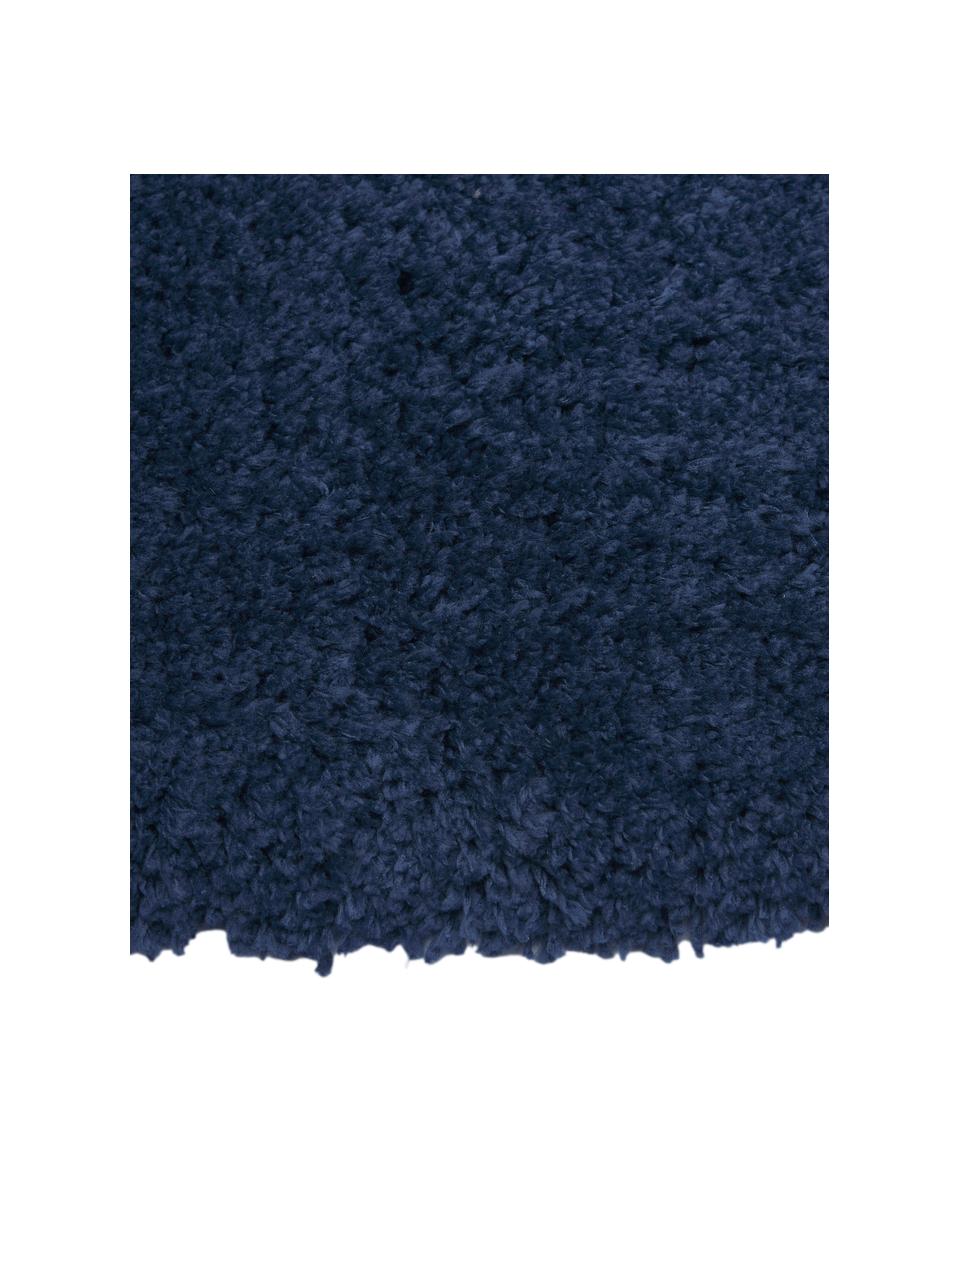 Tapis d'entrée moelleux à poils longs bleu foncé Leighton, Bleu foncé, larg. 80 x long. 200 cm